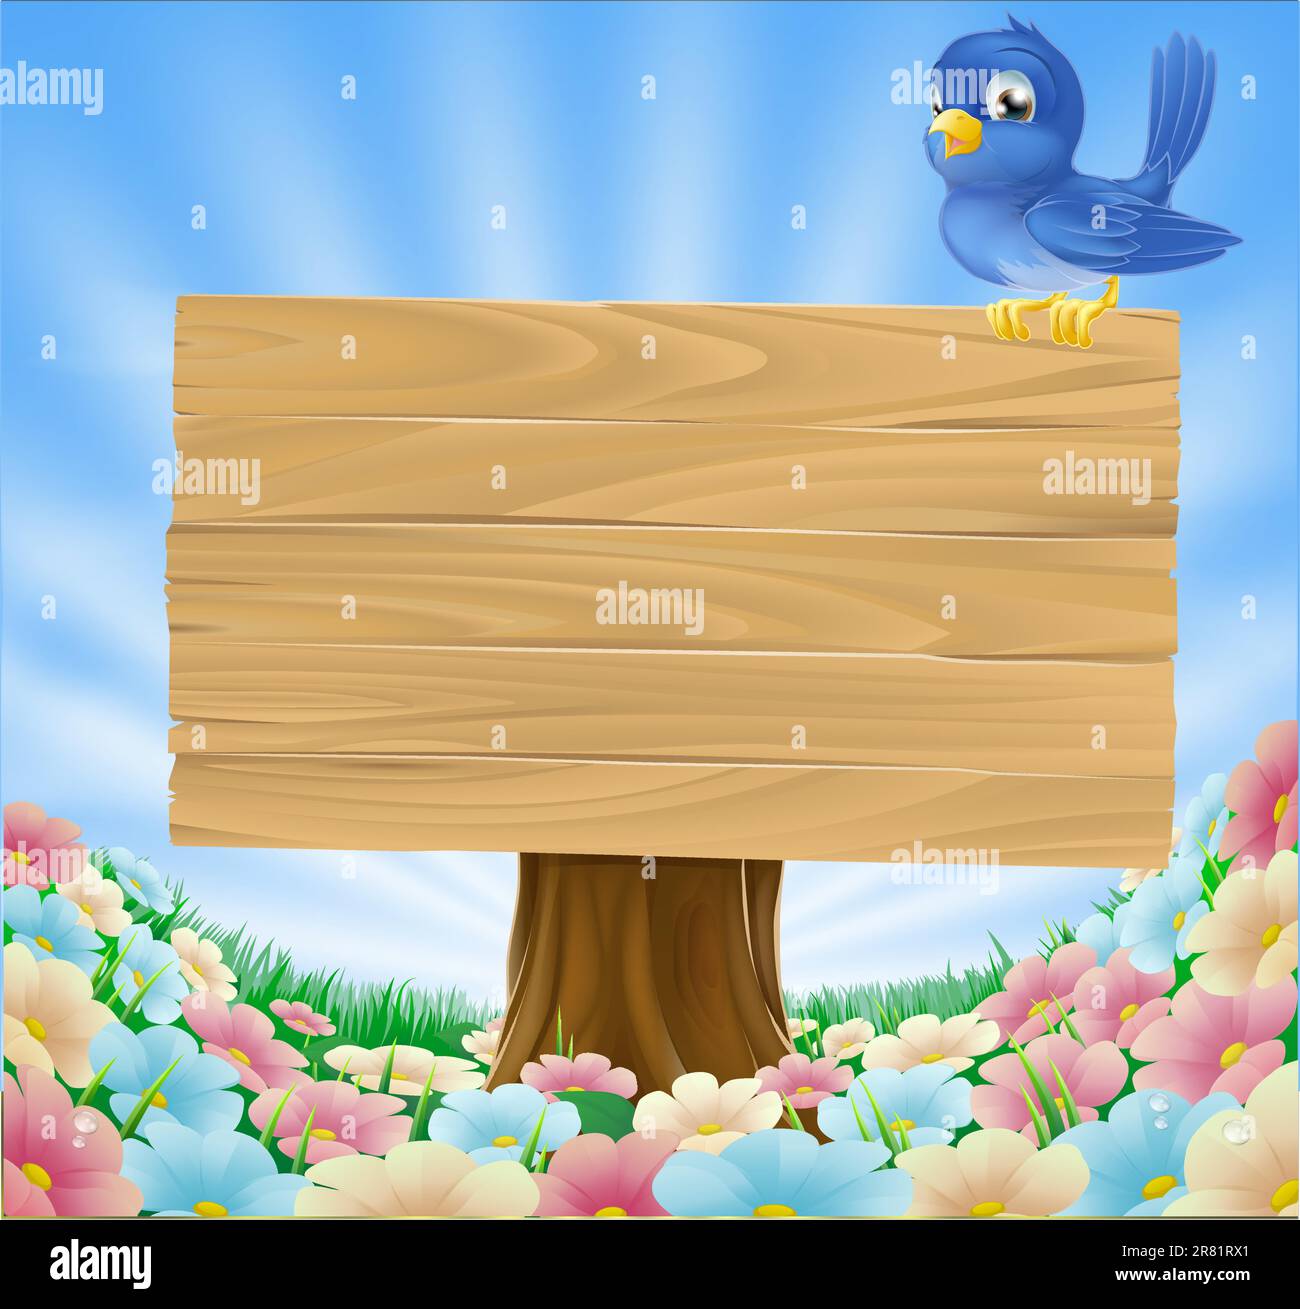 Bleu dessin animé oiseau posé sur un panneau en bois conseil dans une prairie de fleurs Illustration de Vecteur